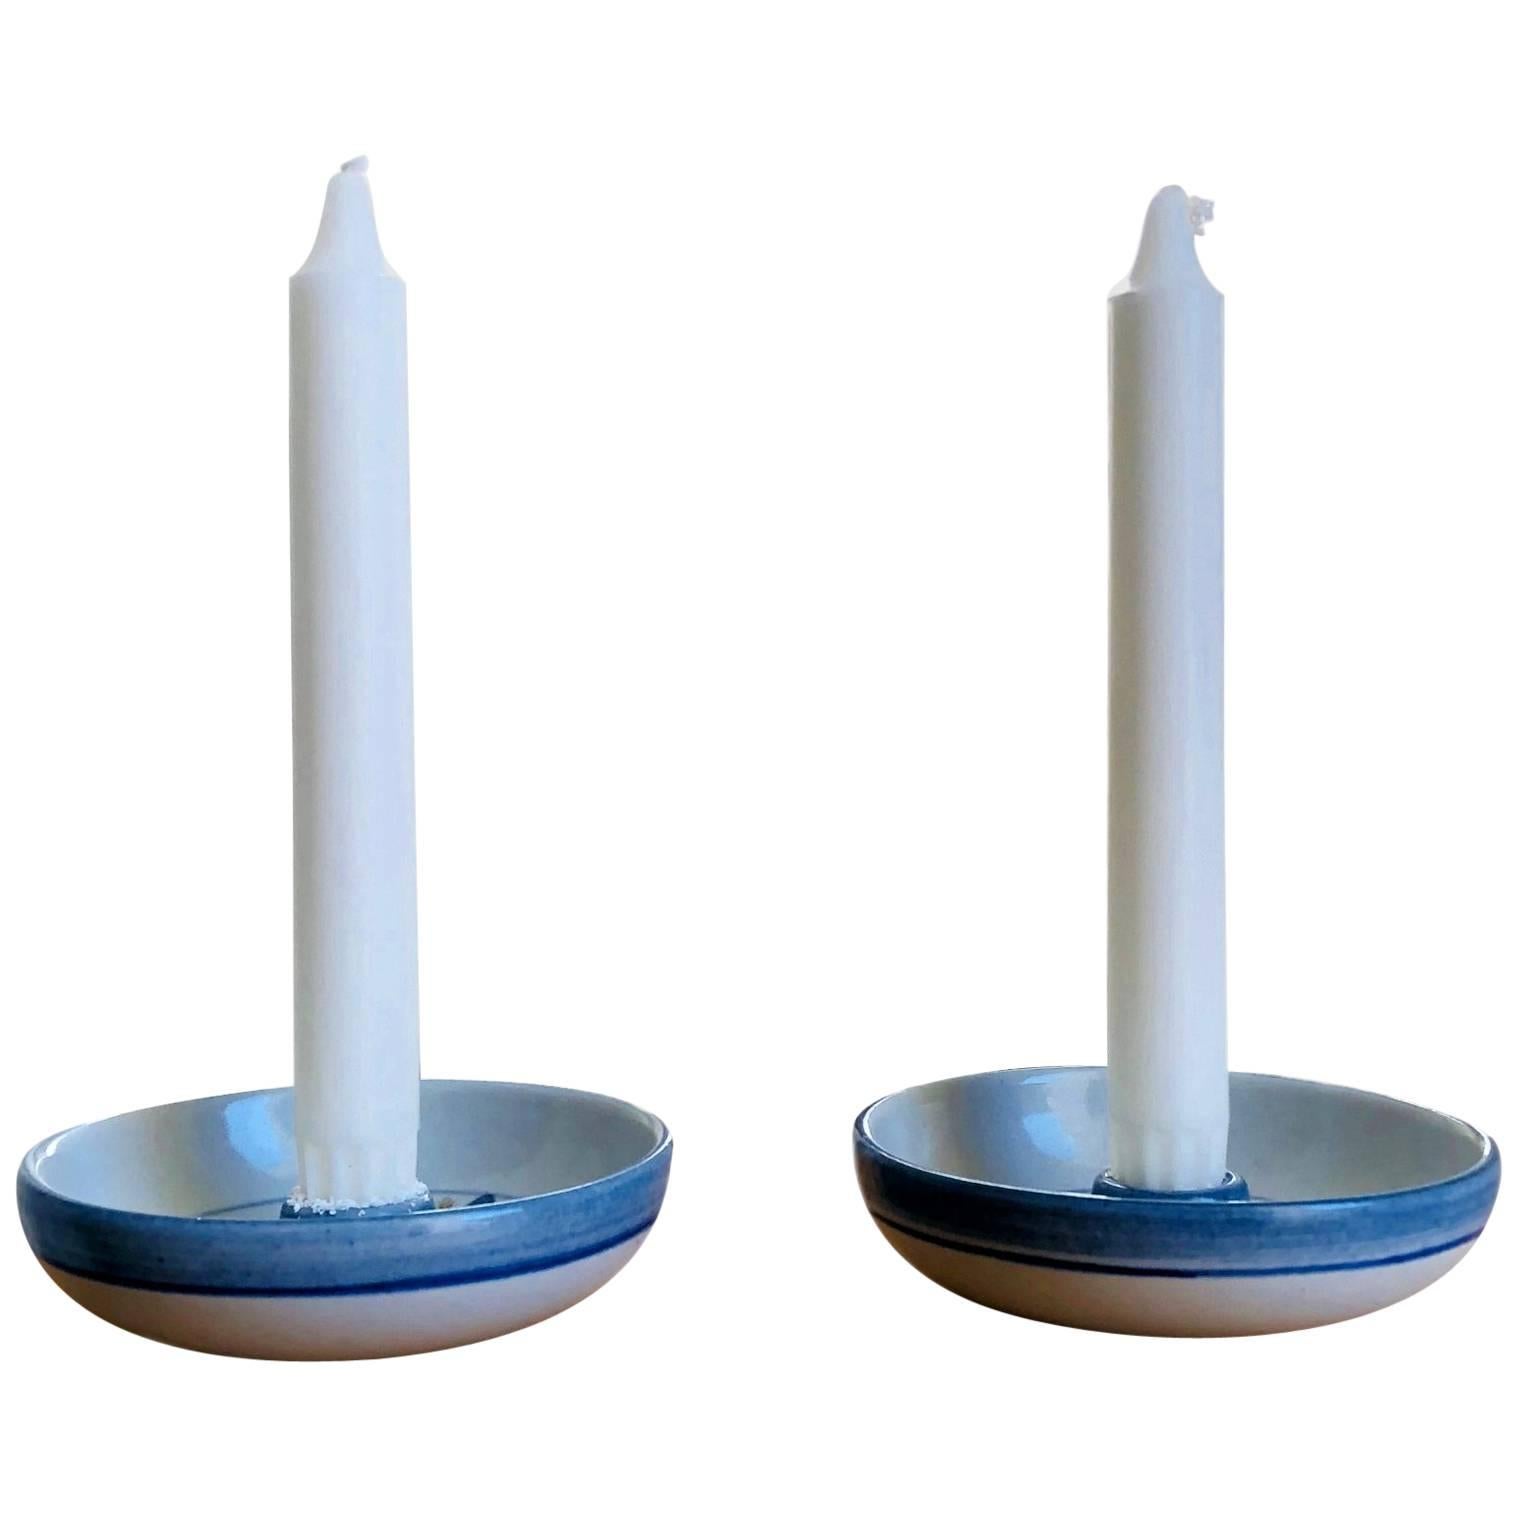 Søholm Stentøj, Candle Light Holders For Sale